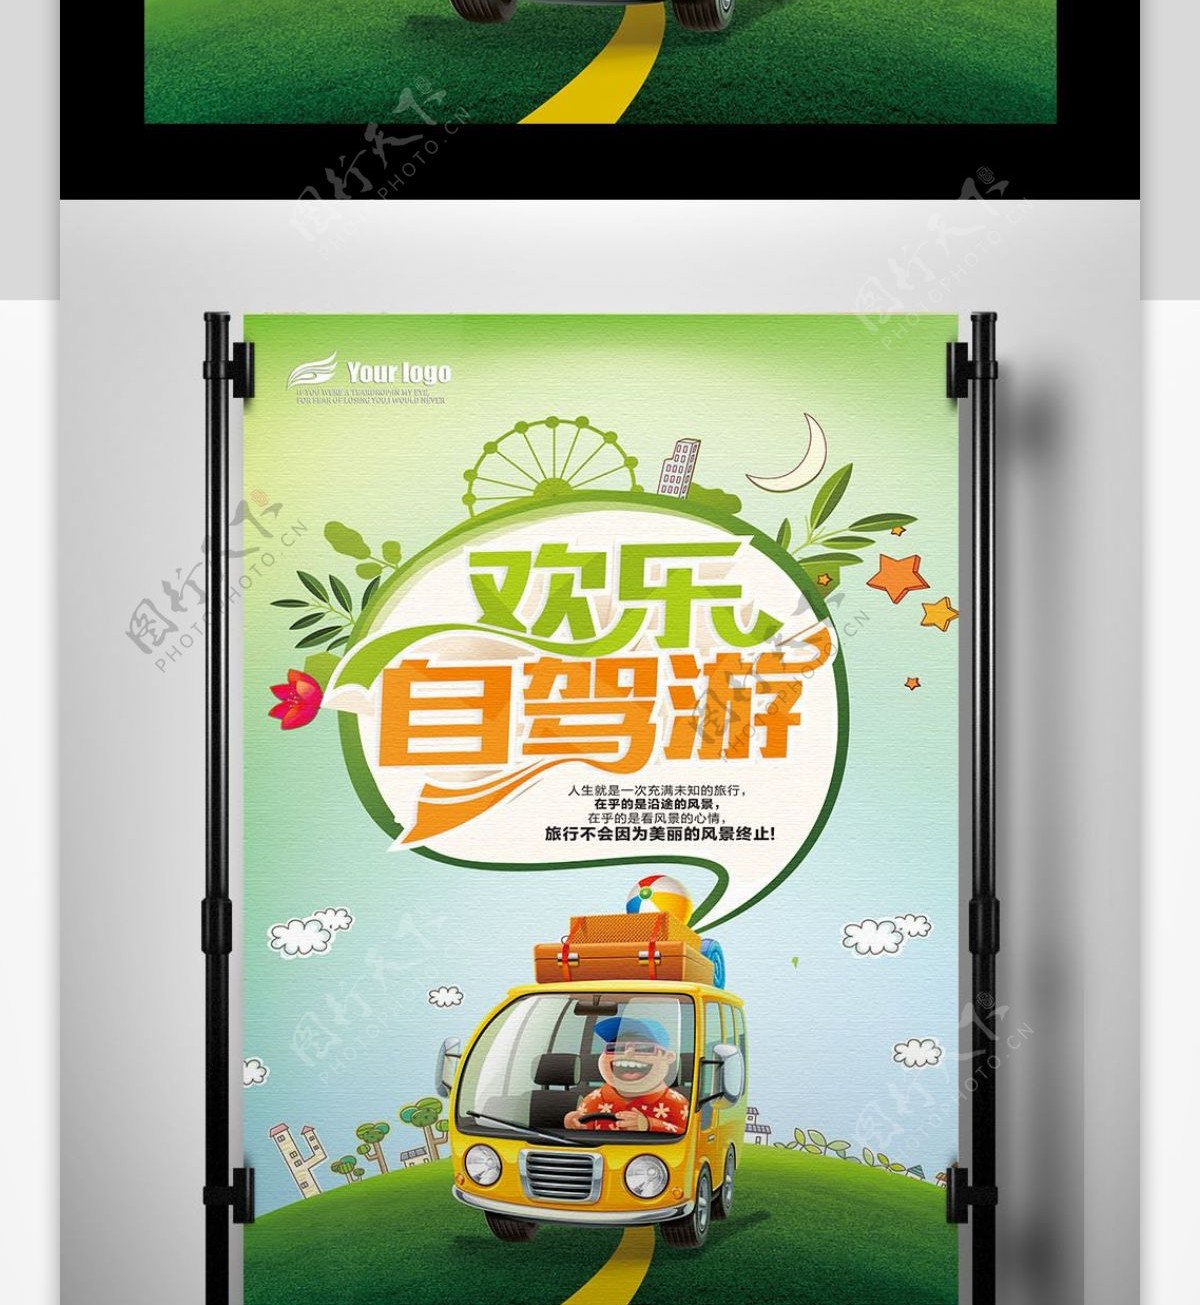 2017年清新自驾游海报设计PSD格式